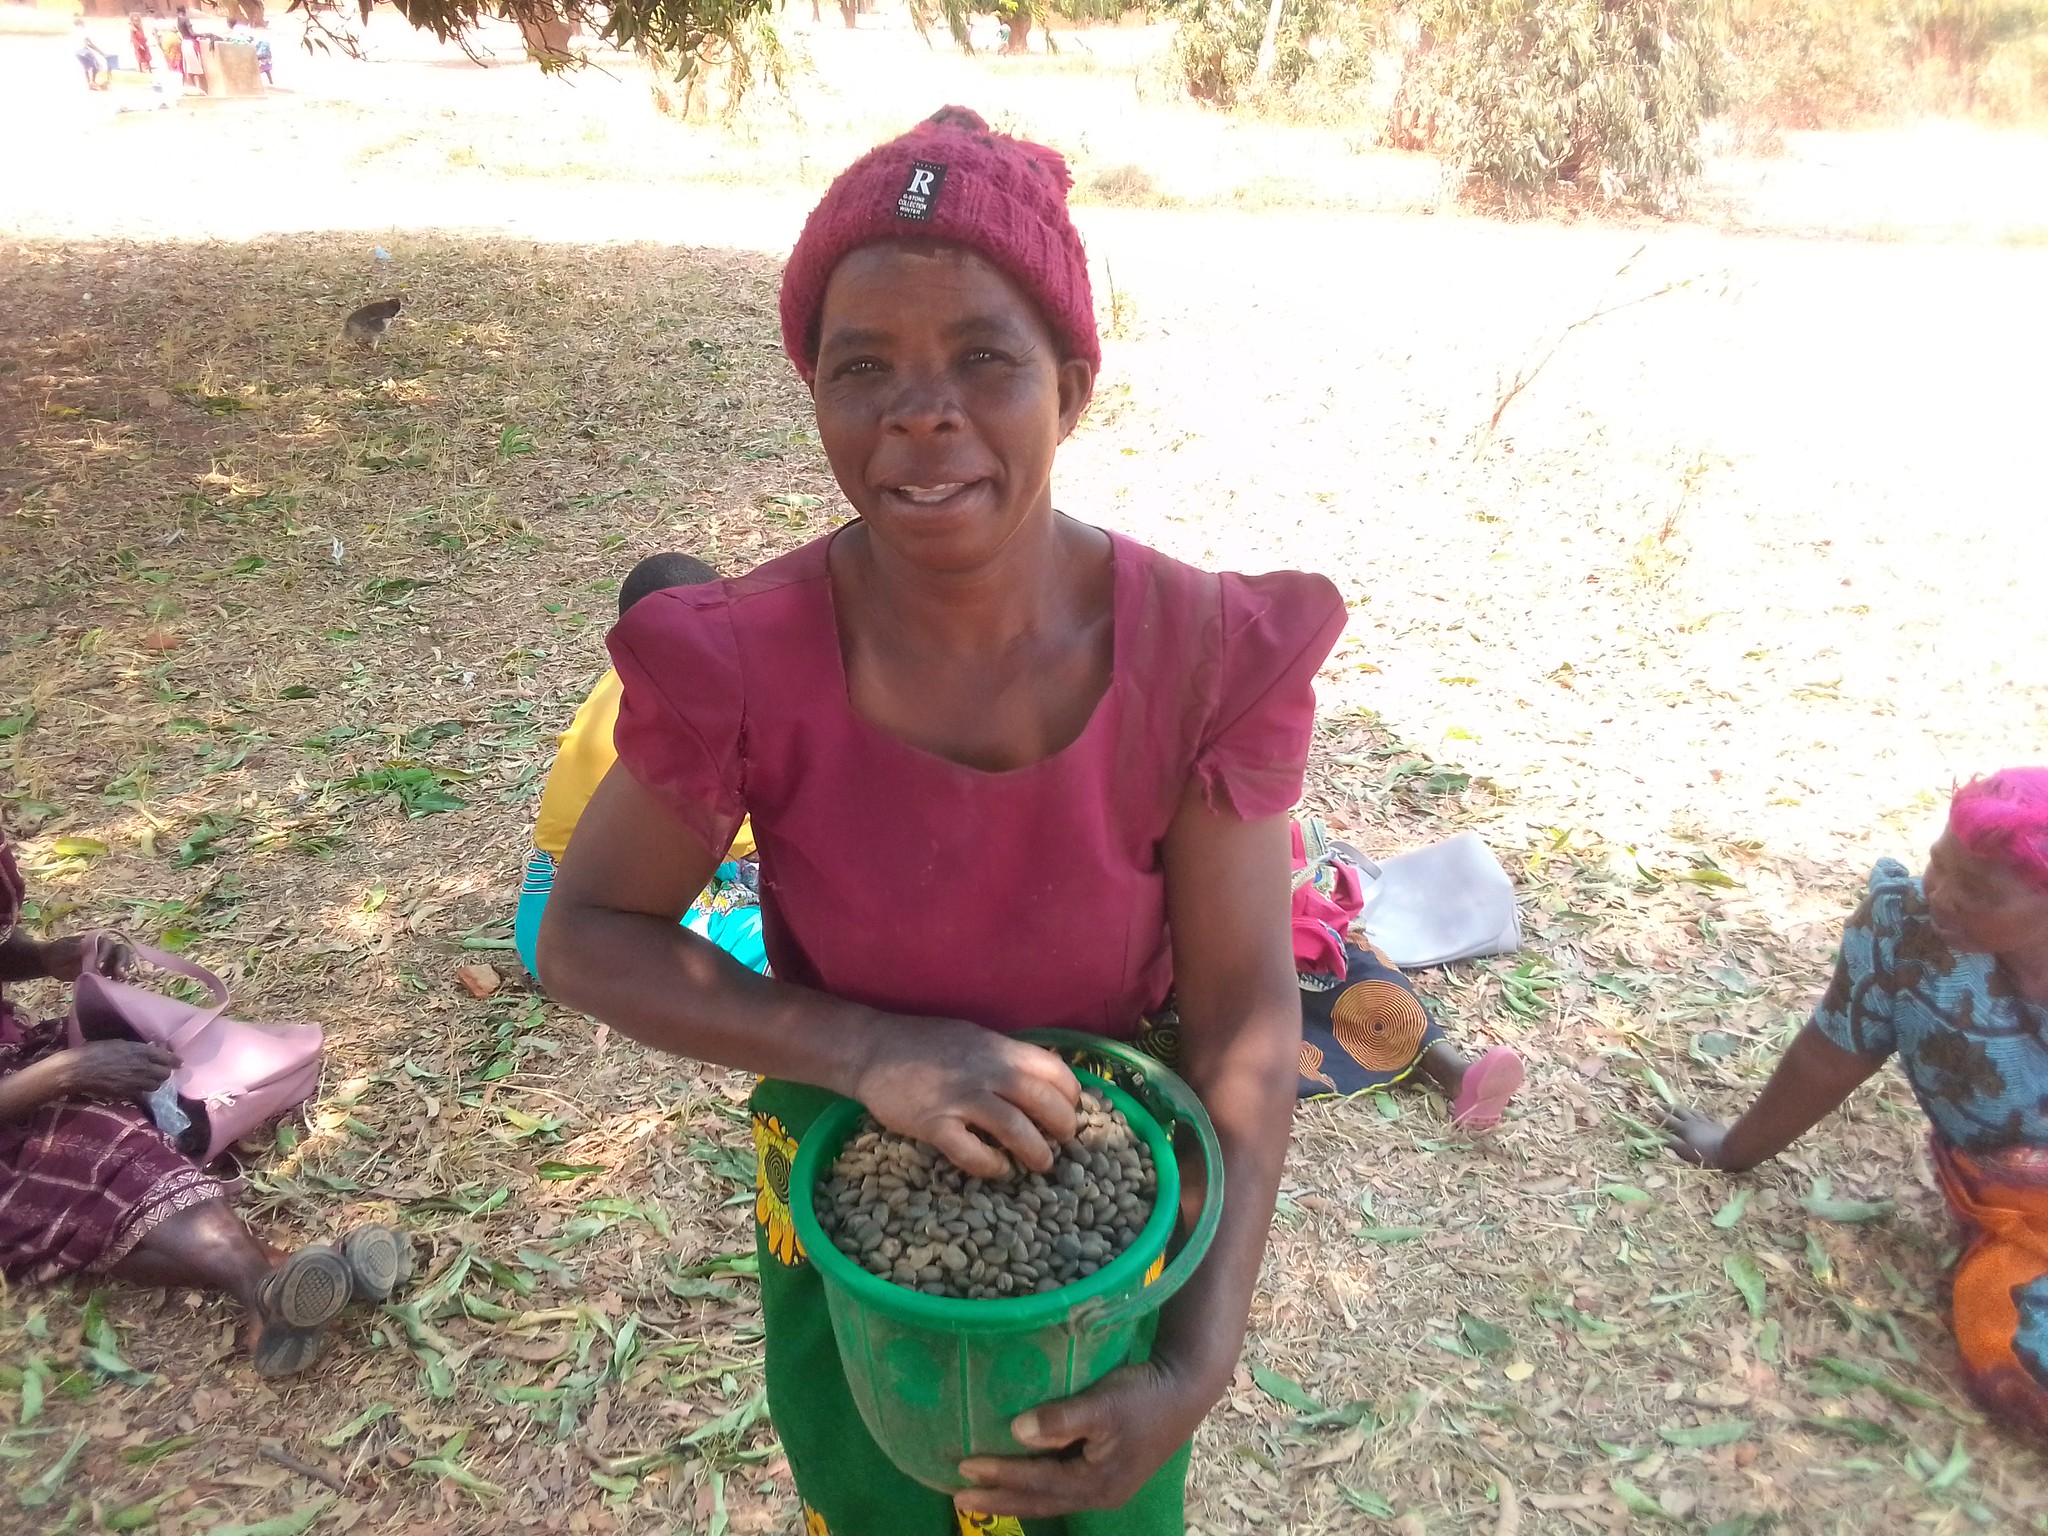 Mwabvi seedlings being distributed in Embangweni